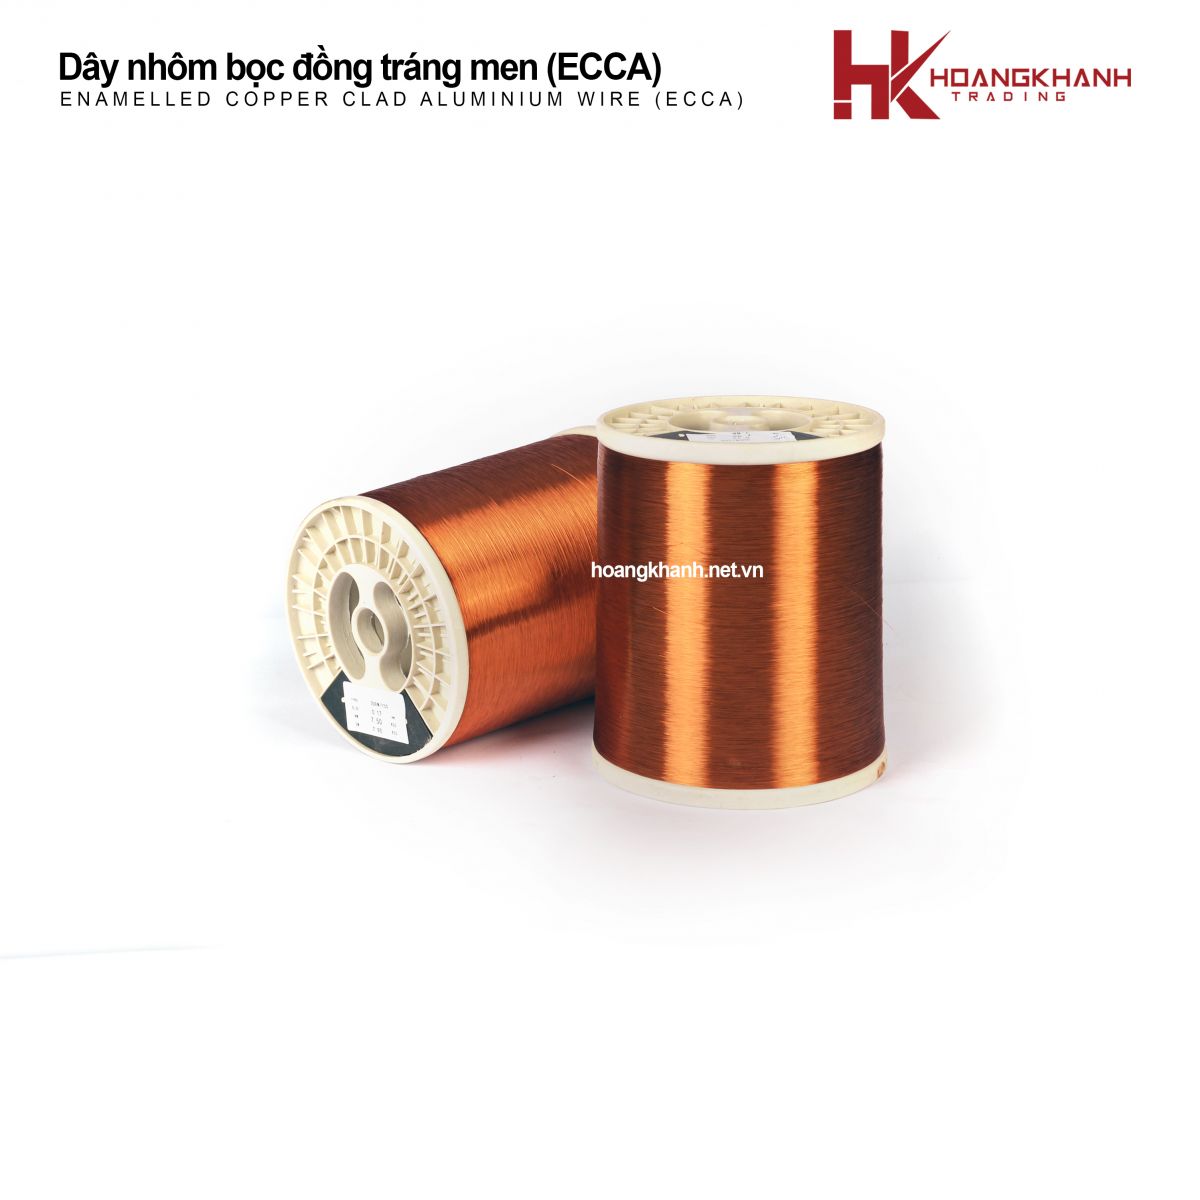 Enamelled Copper Clad Aluminium Wire (ECCA)